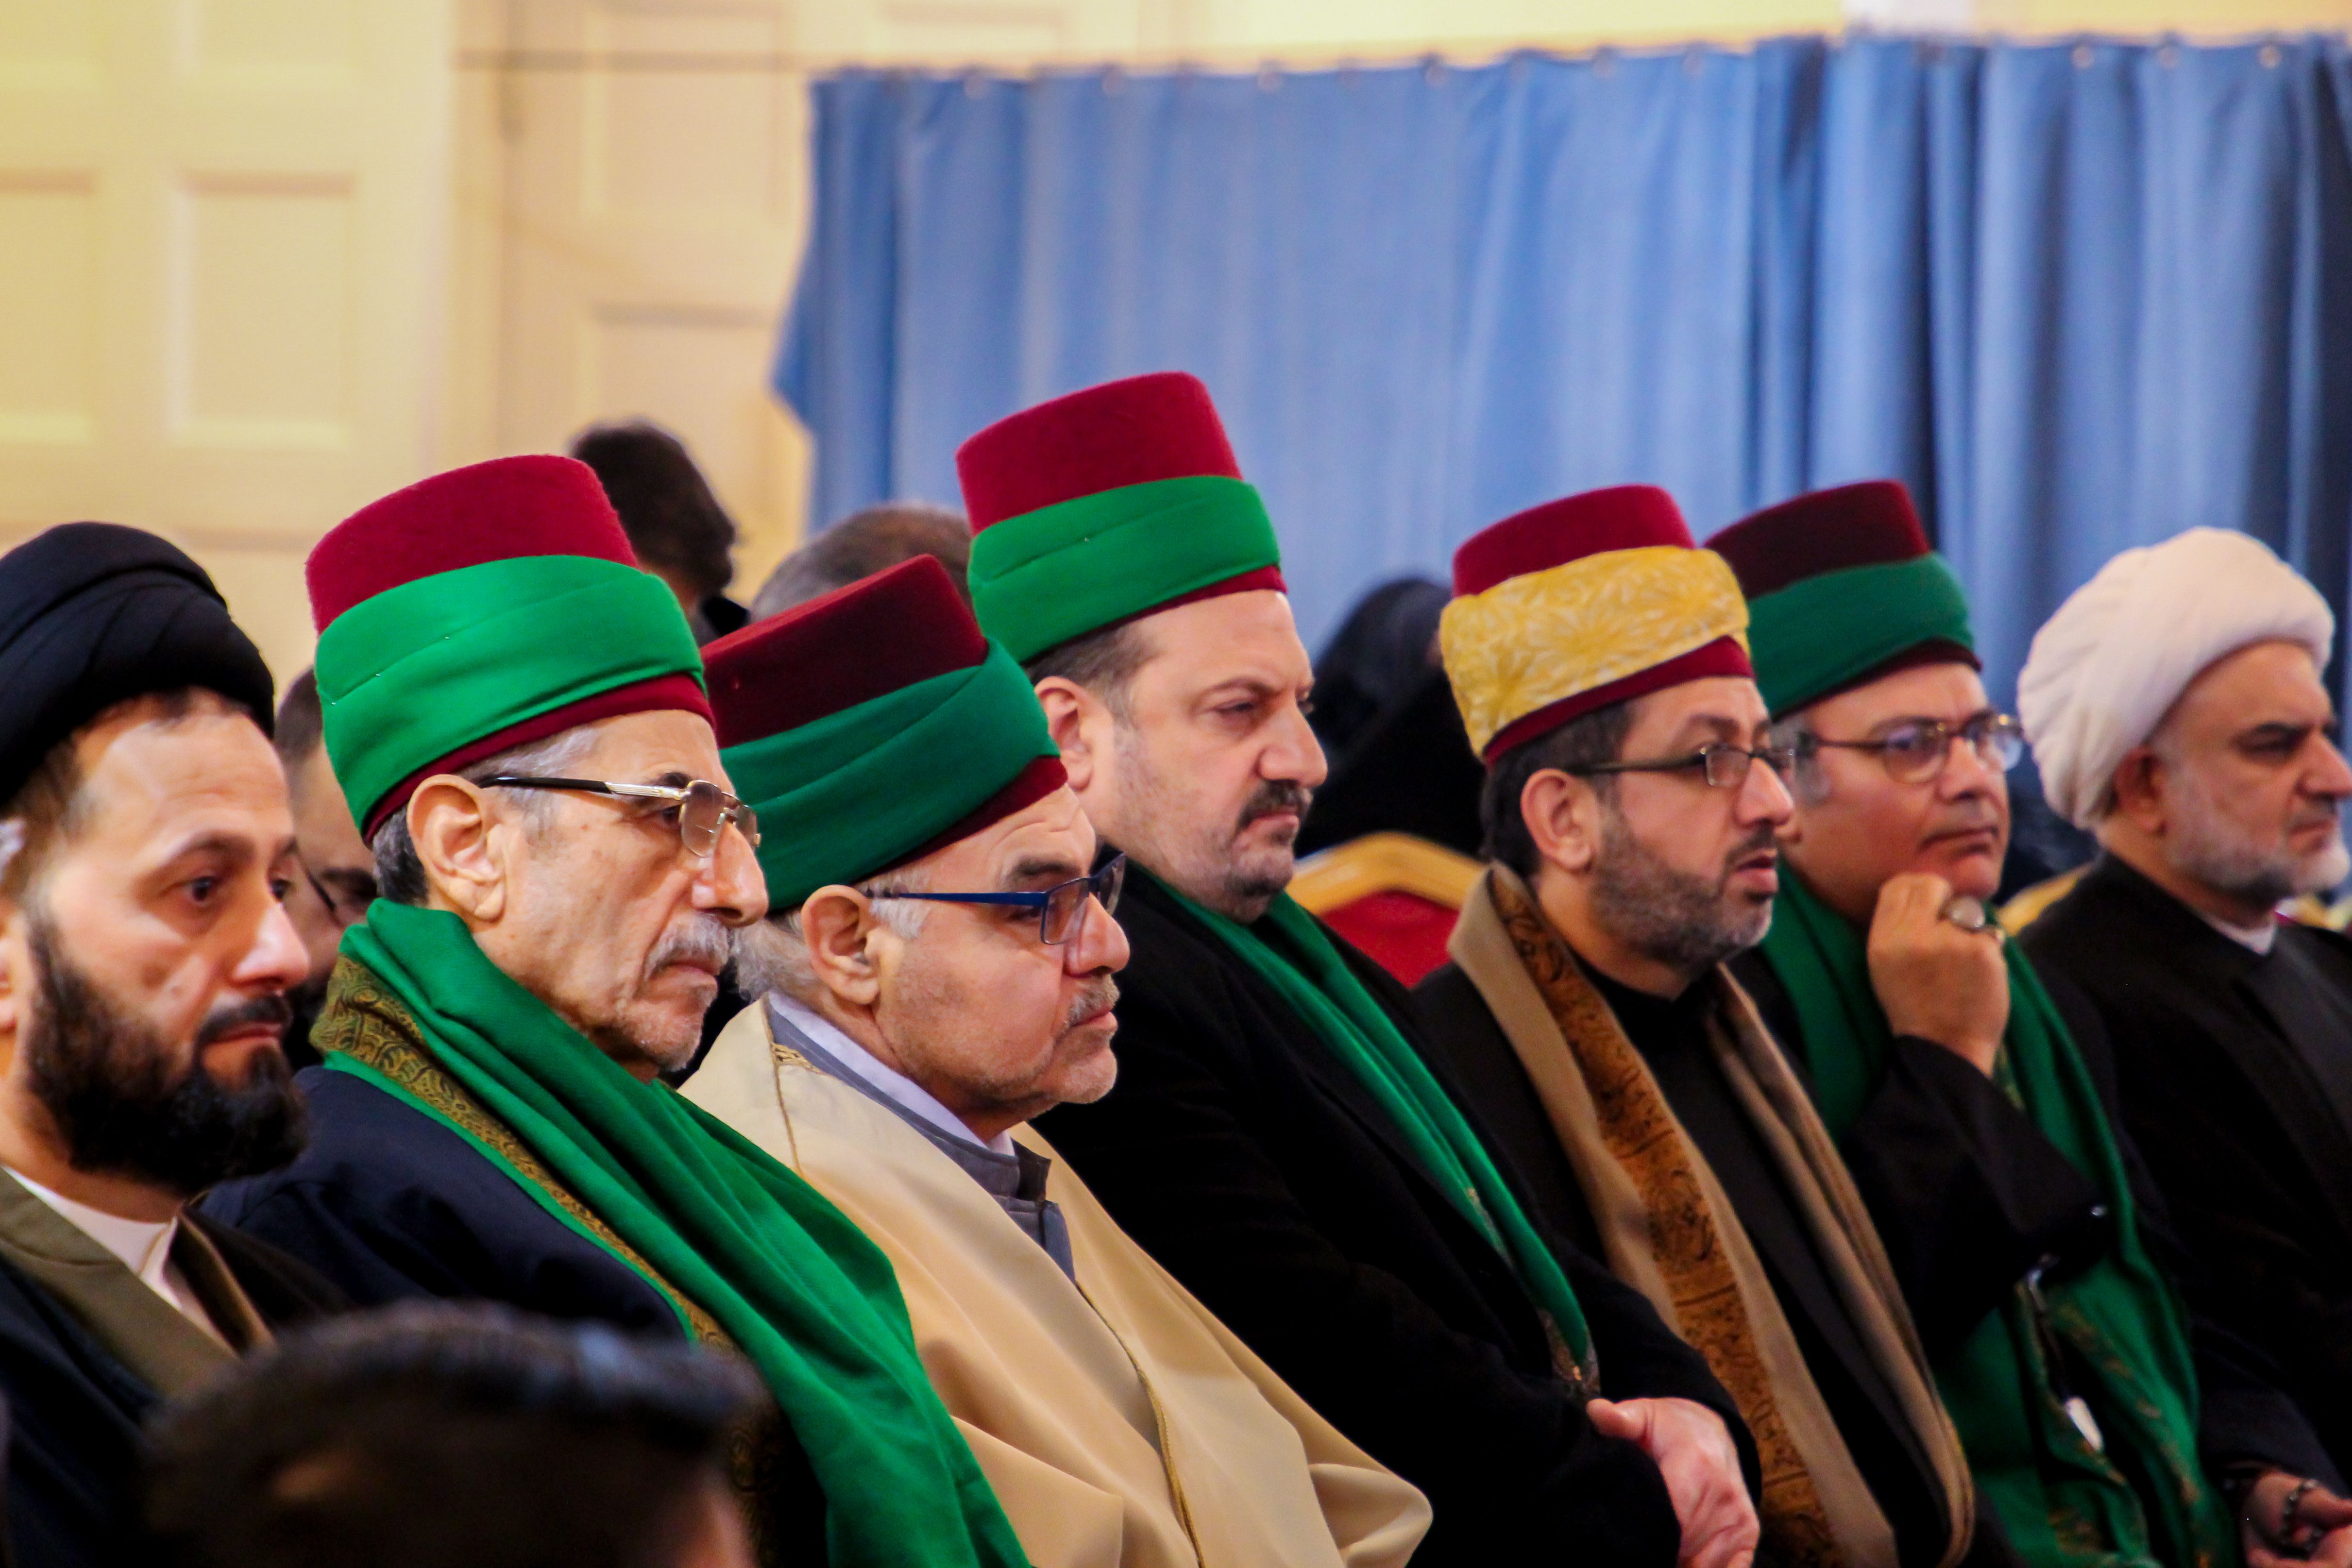 مؤسسة الامام الخوئي في لندن تحتضن ختام المسابقة القرآنية الثالثة